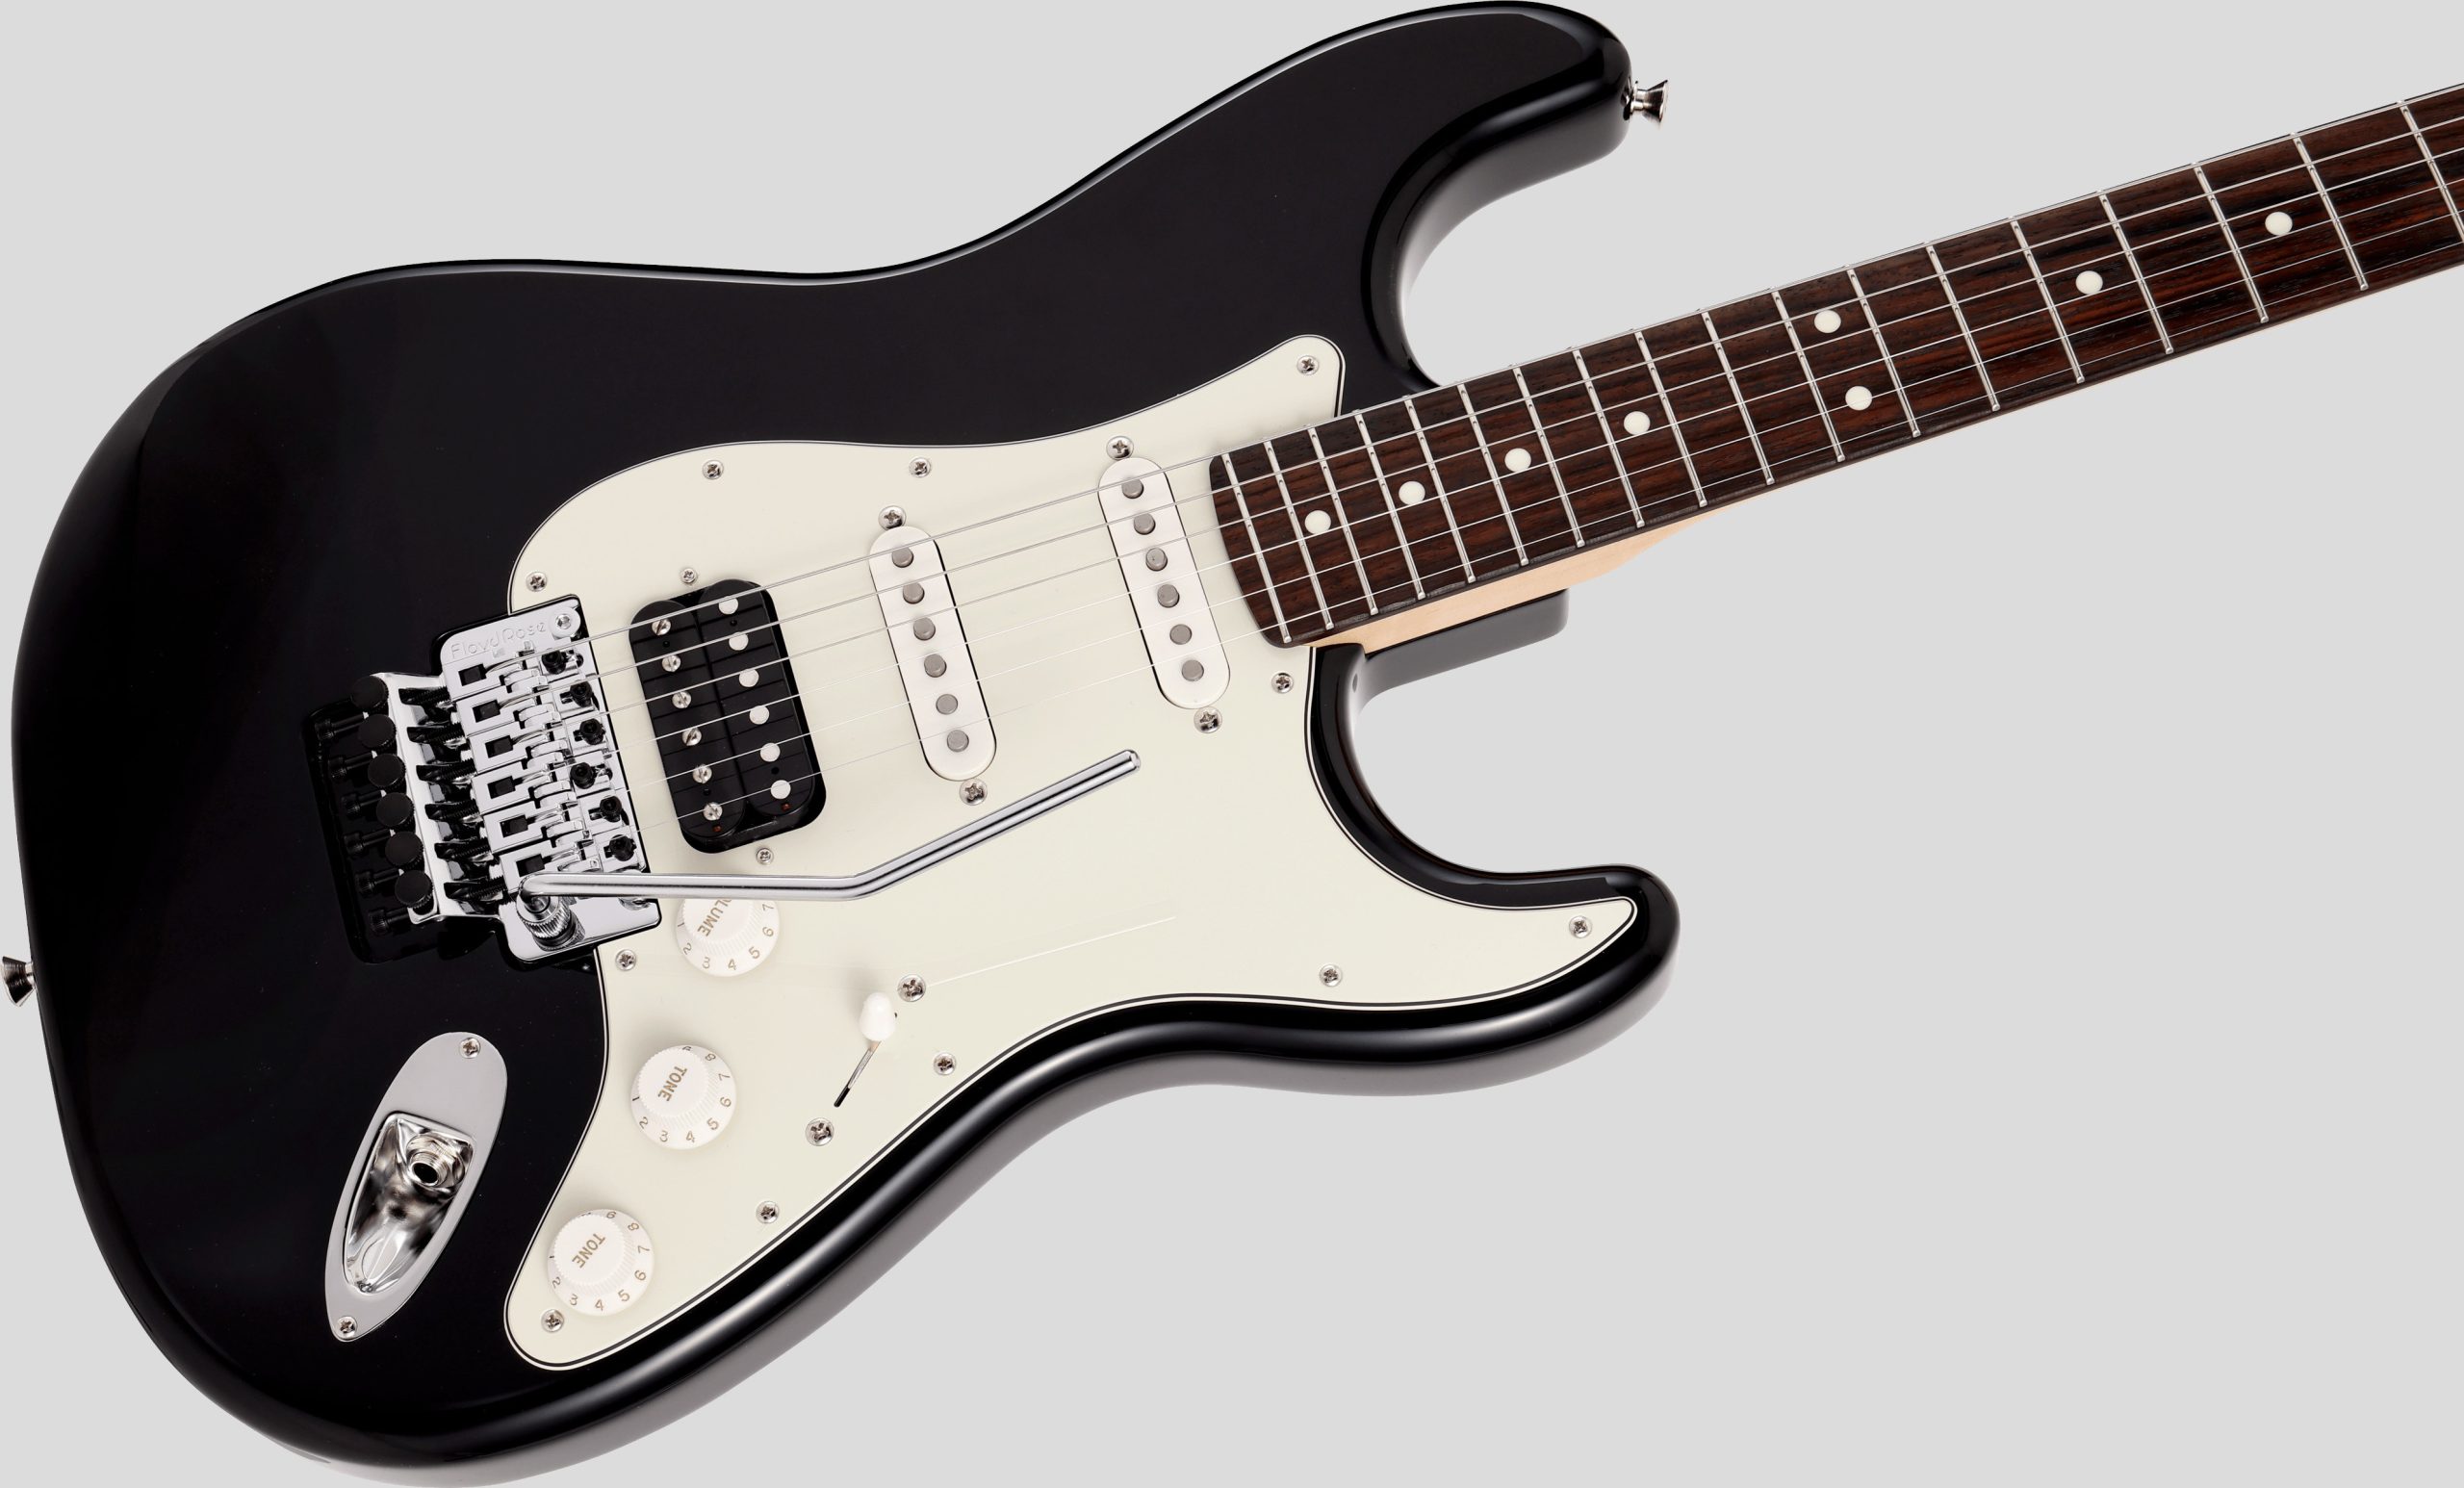 Fender Limited Edition Stratocaster Floyd Rose Black 3